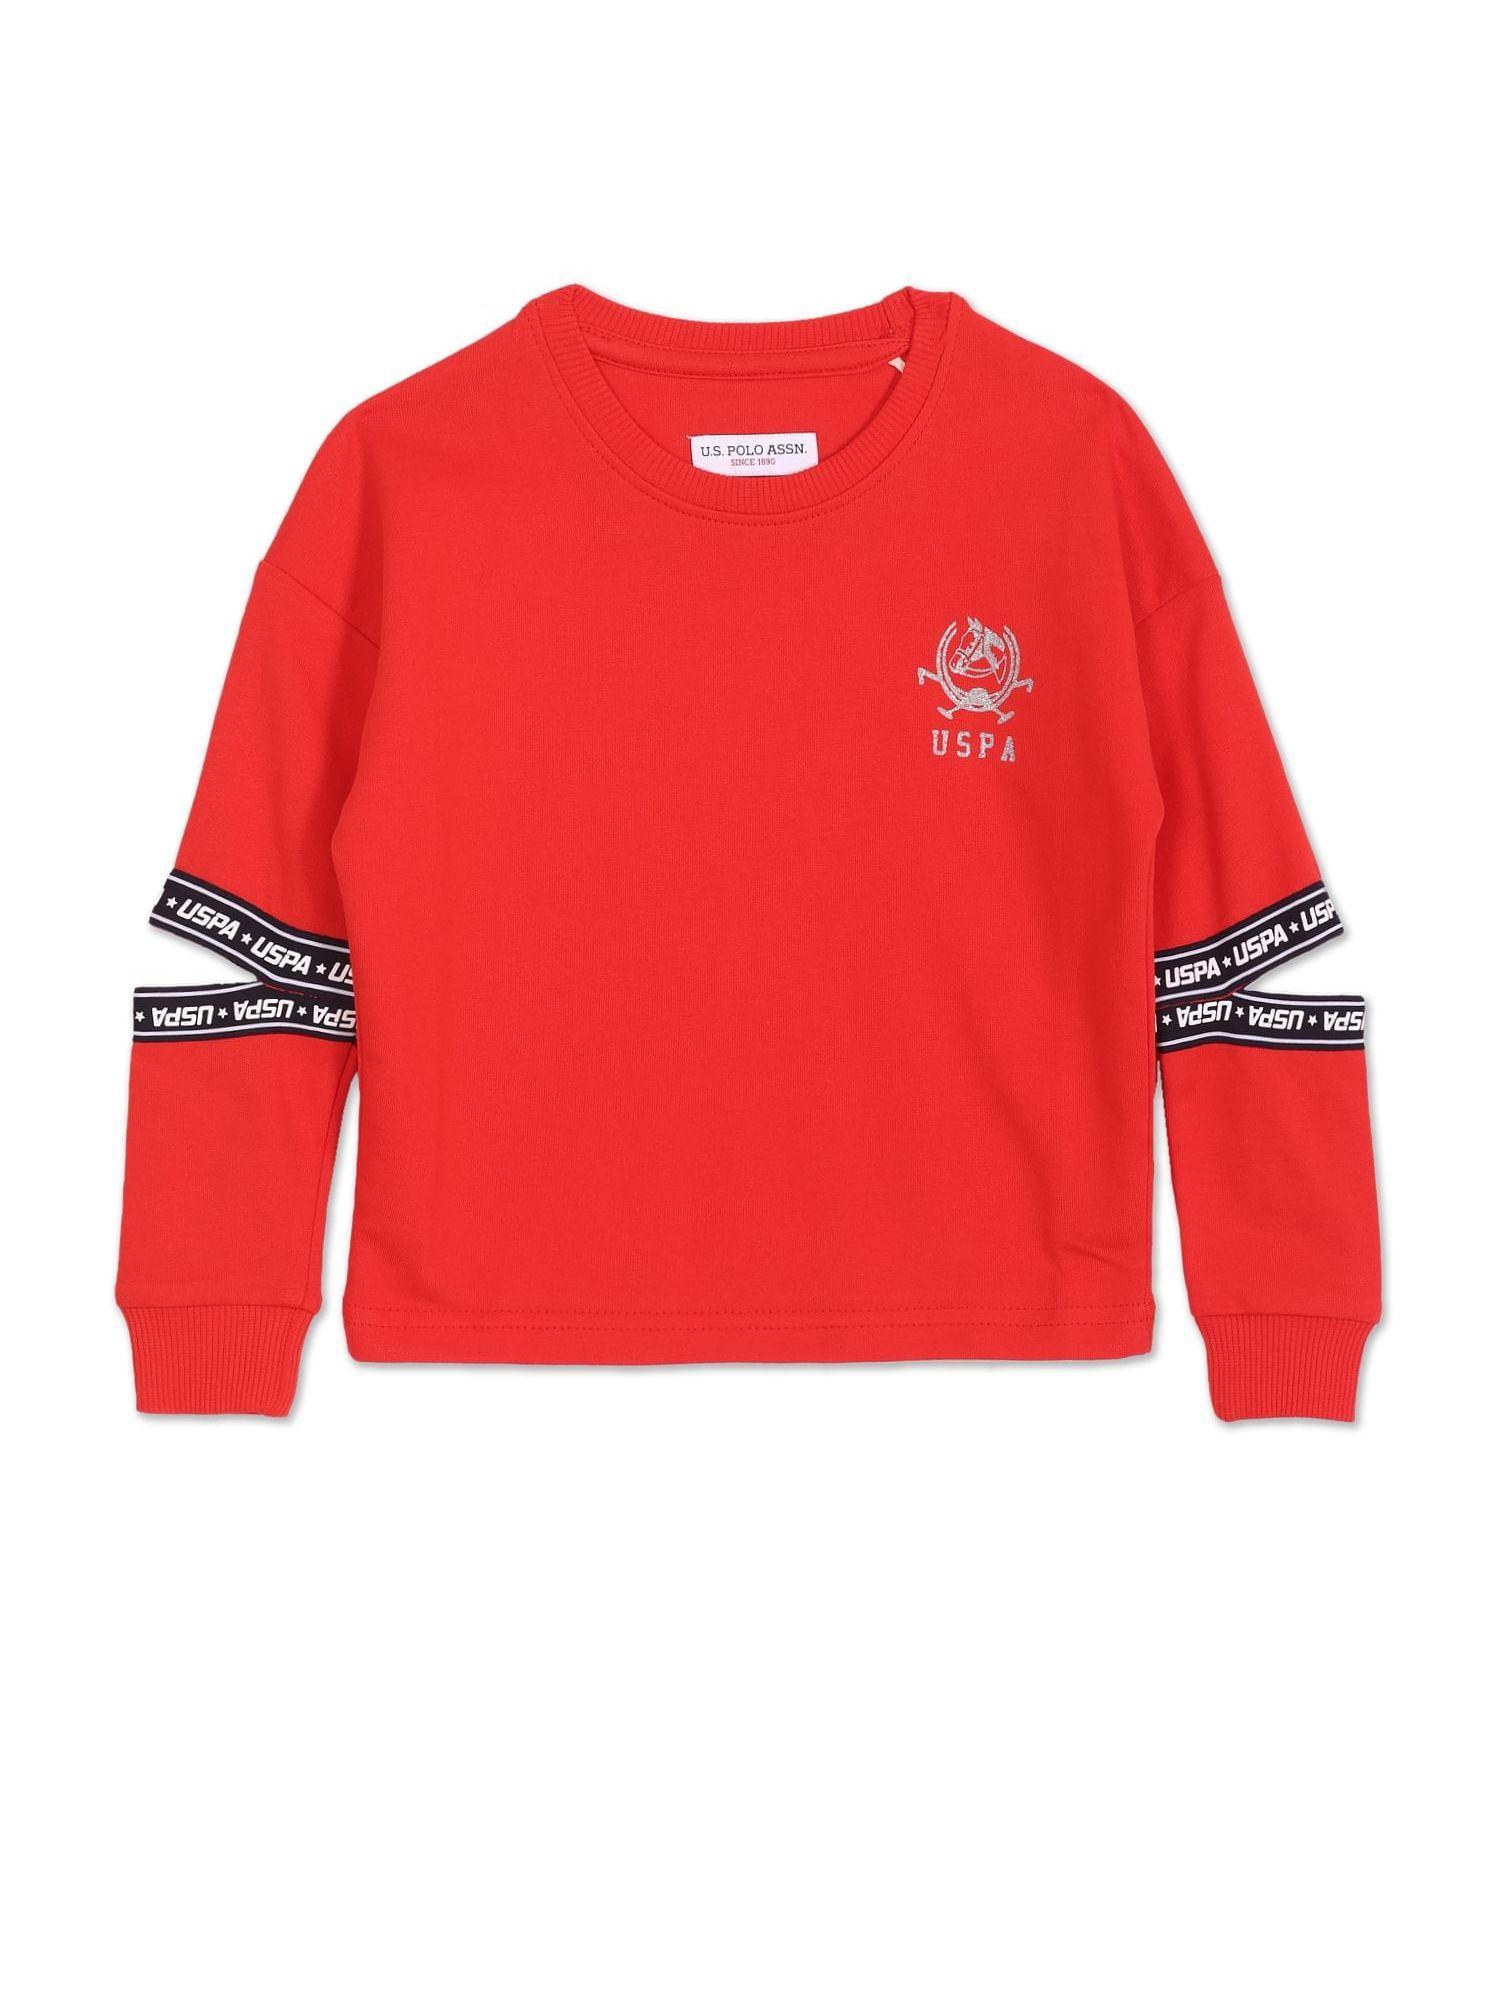 Girls Red Crew Neck Solid Cotton Sweatshirt